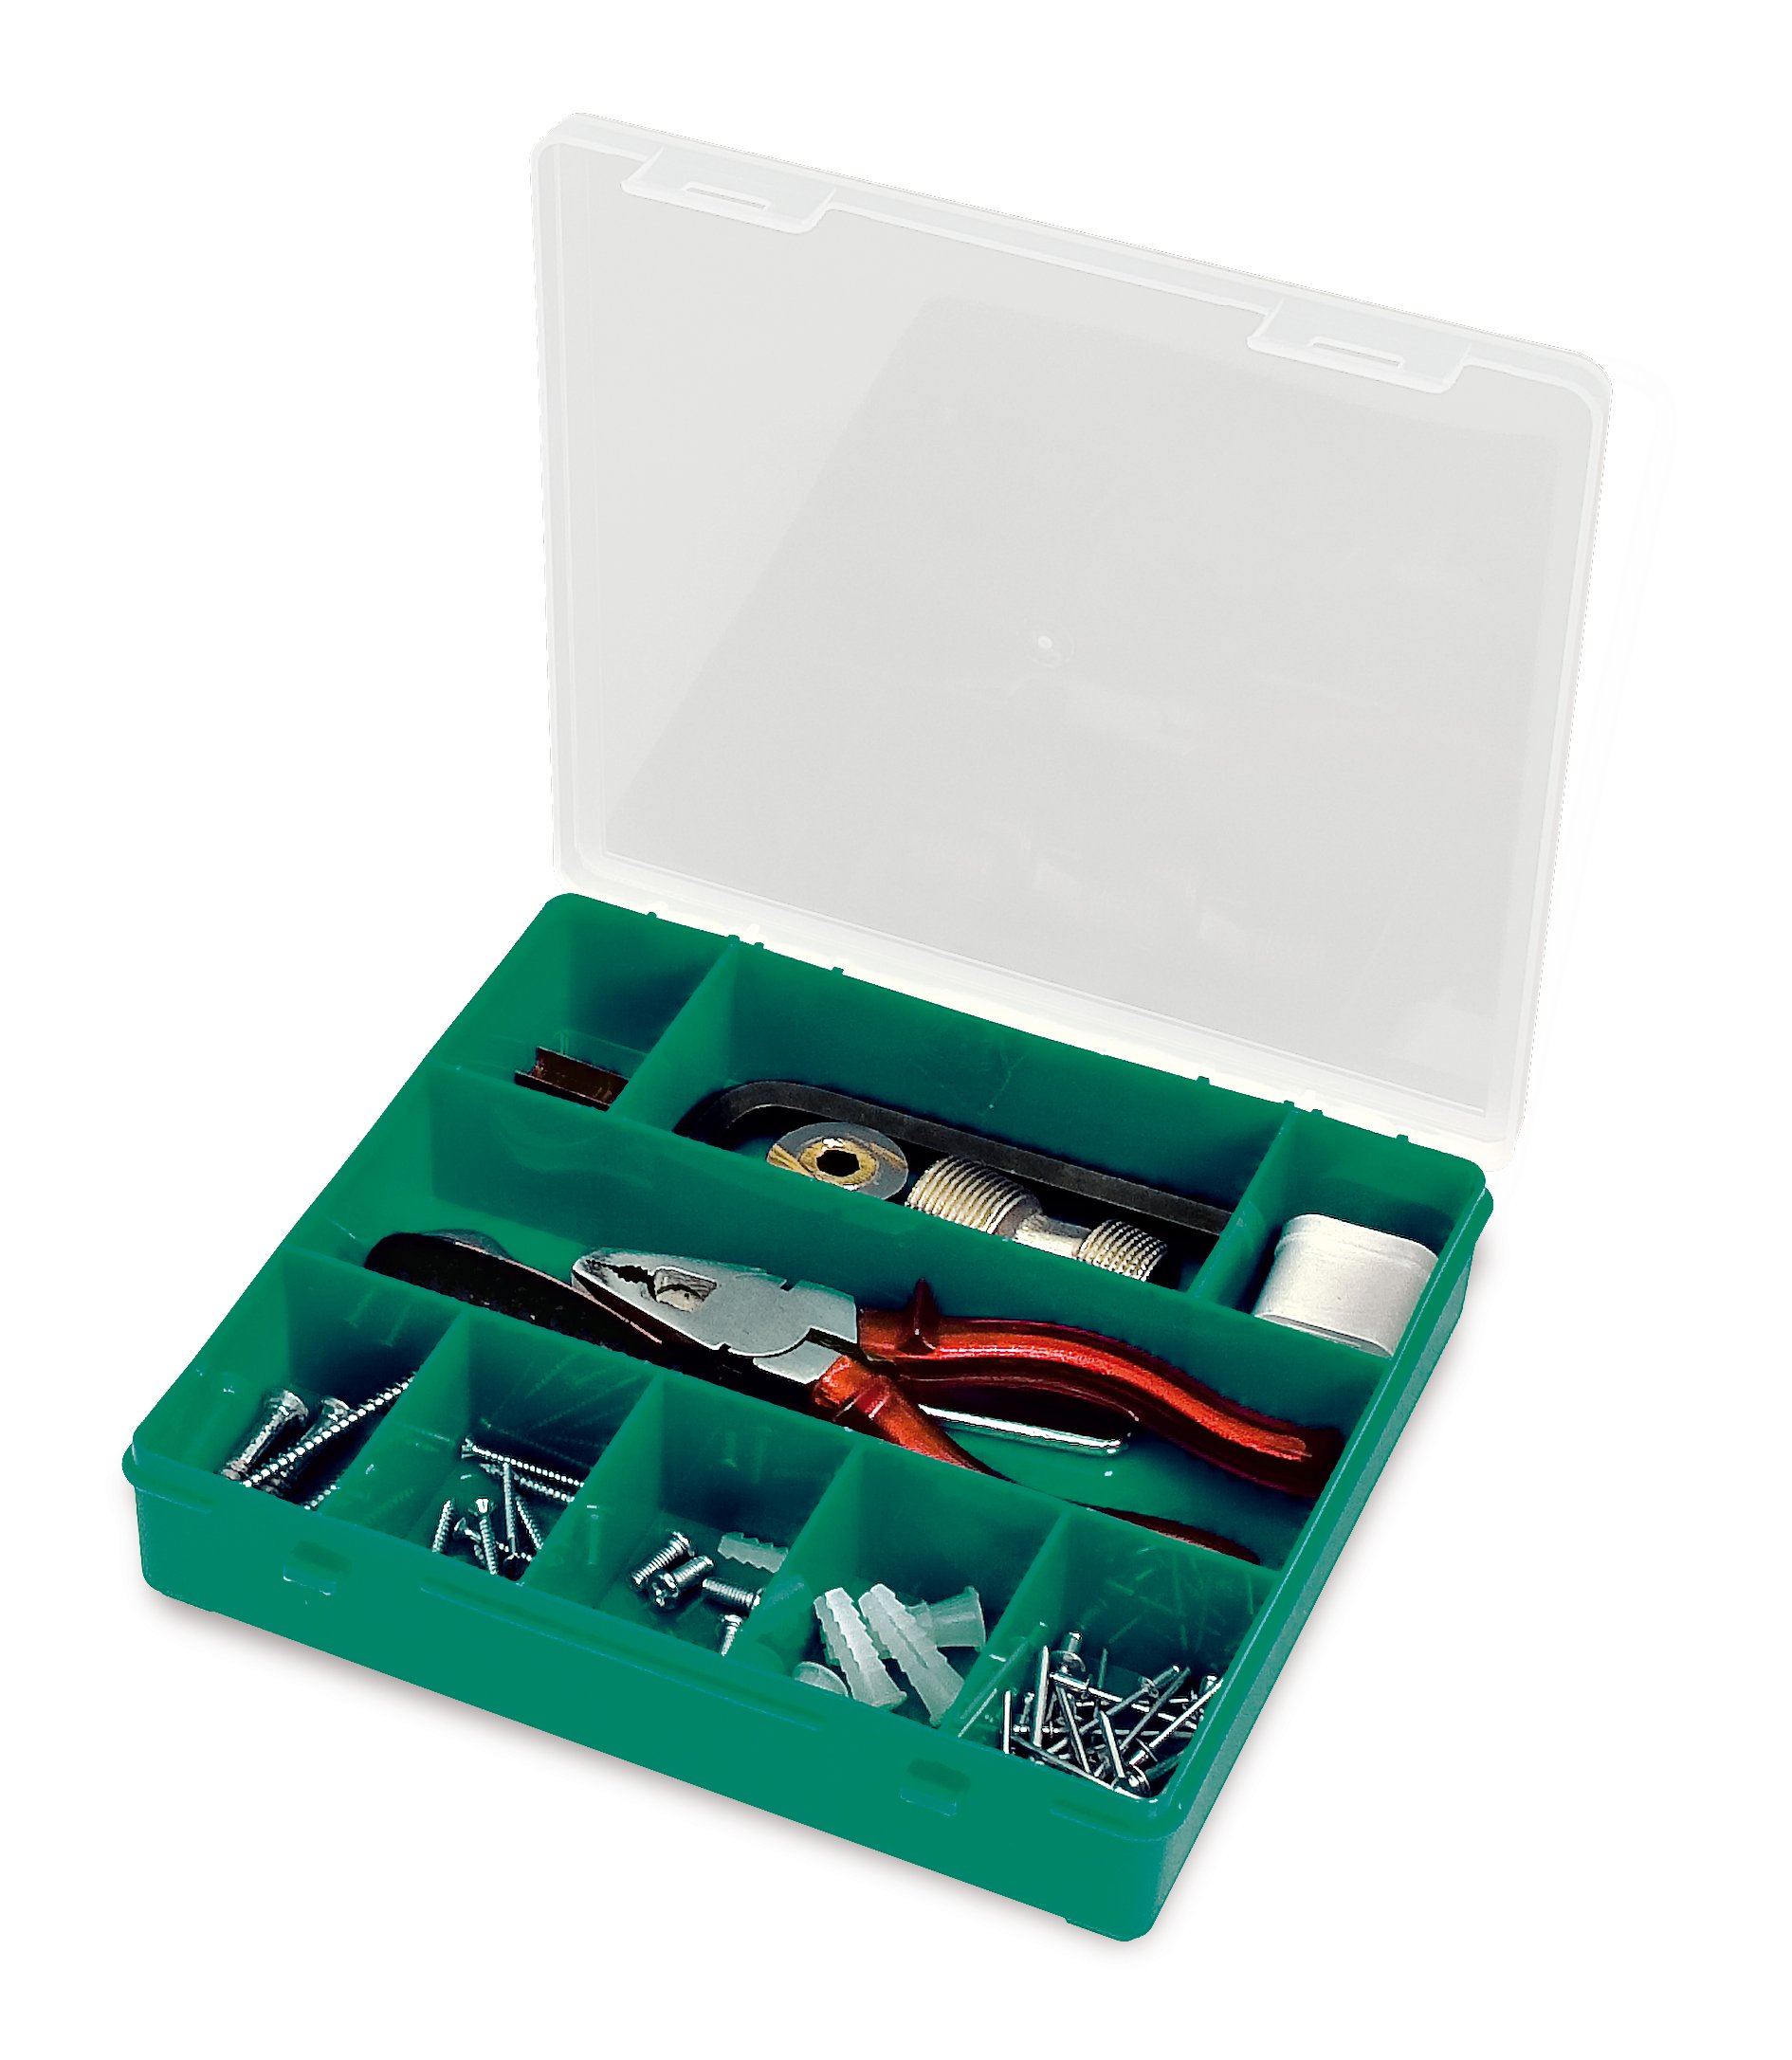 Органайзер Tayg Box 33-9 Estuche, для зберігання дрібних предметів, 21,5х20,7х4,2 см, зелений (009006) - фото 1